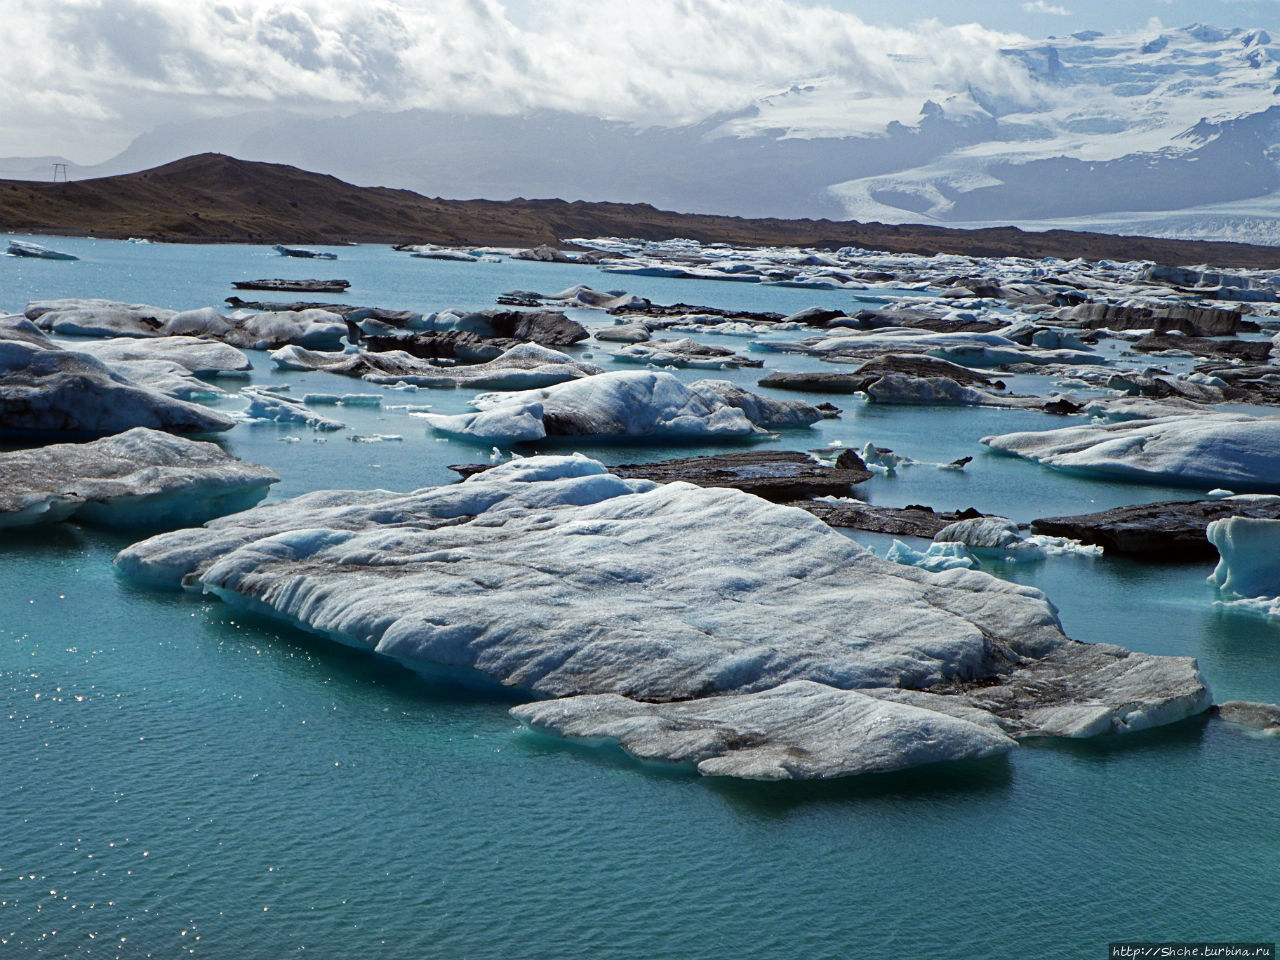 Йекюльсаурлон - исландская Антарктида в миниатюре